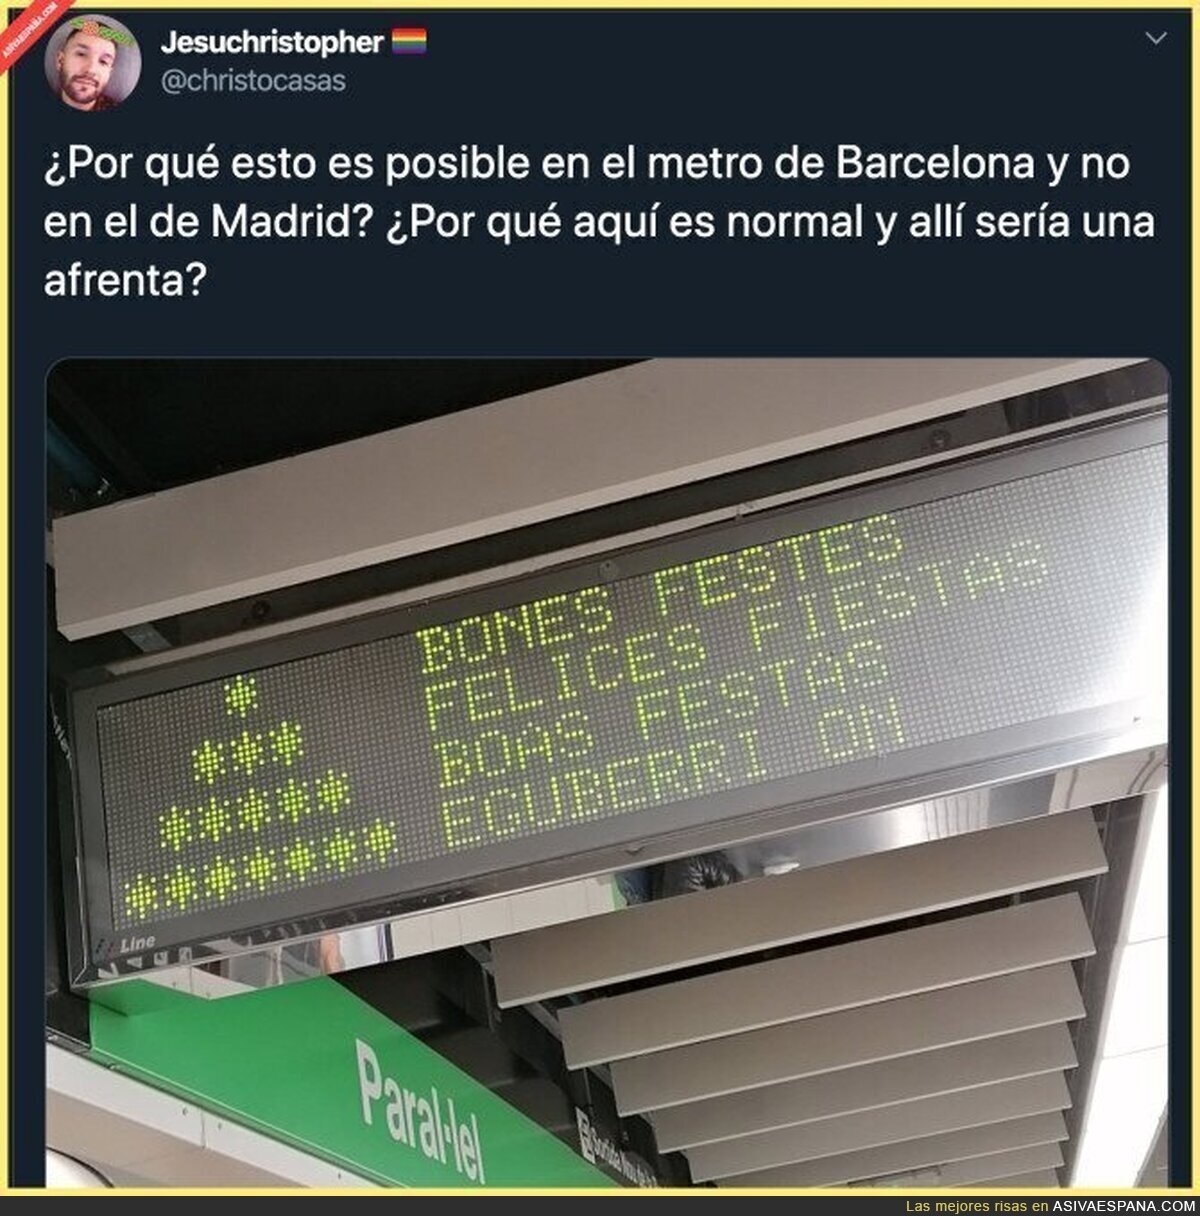 Hay mucho más respeto en Barcelona que en Madrid